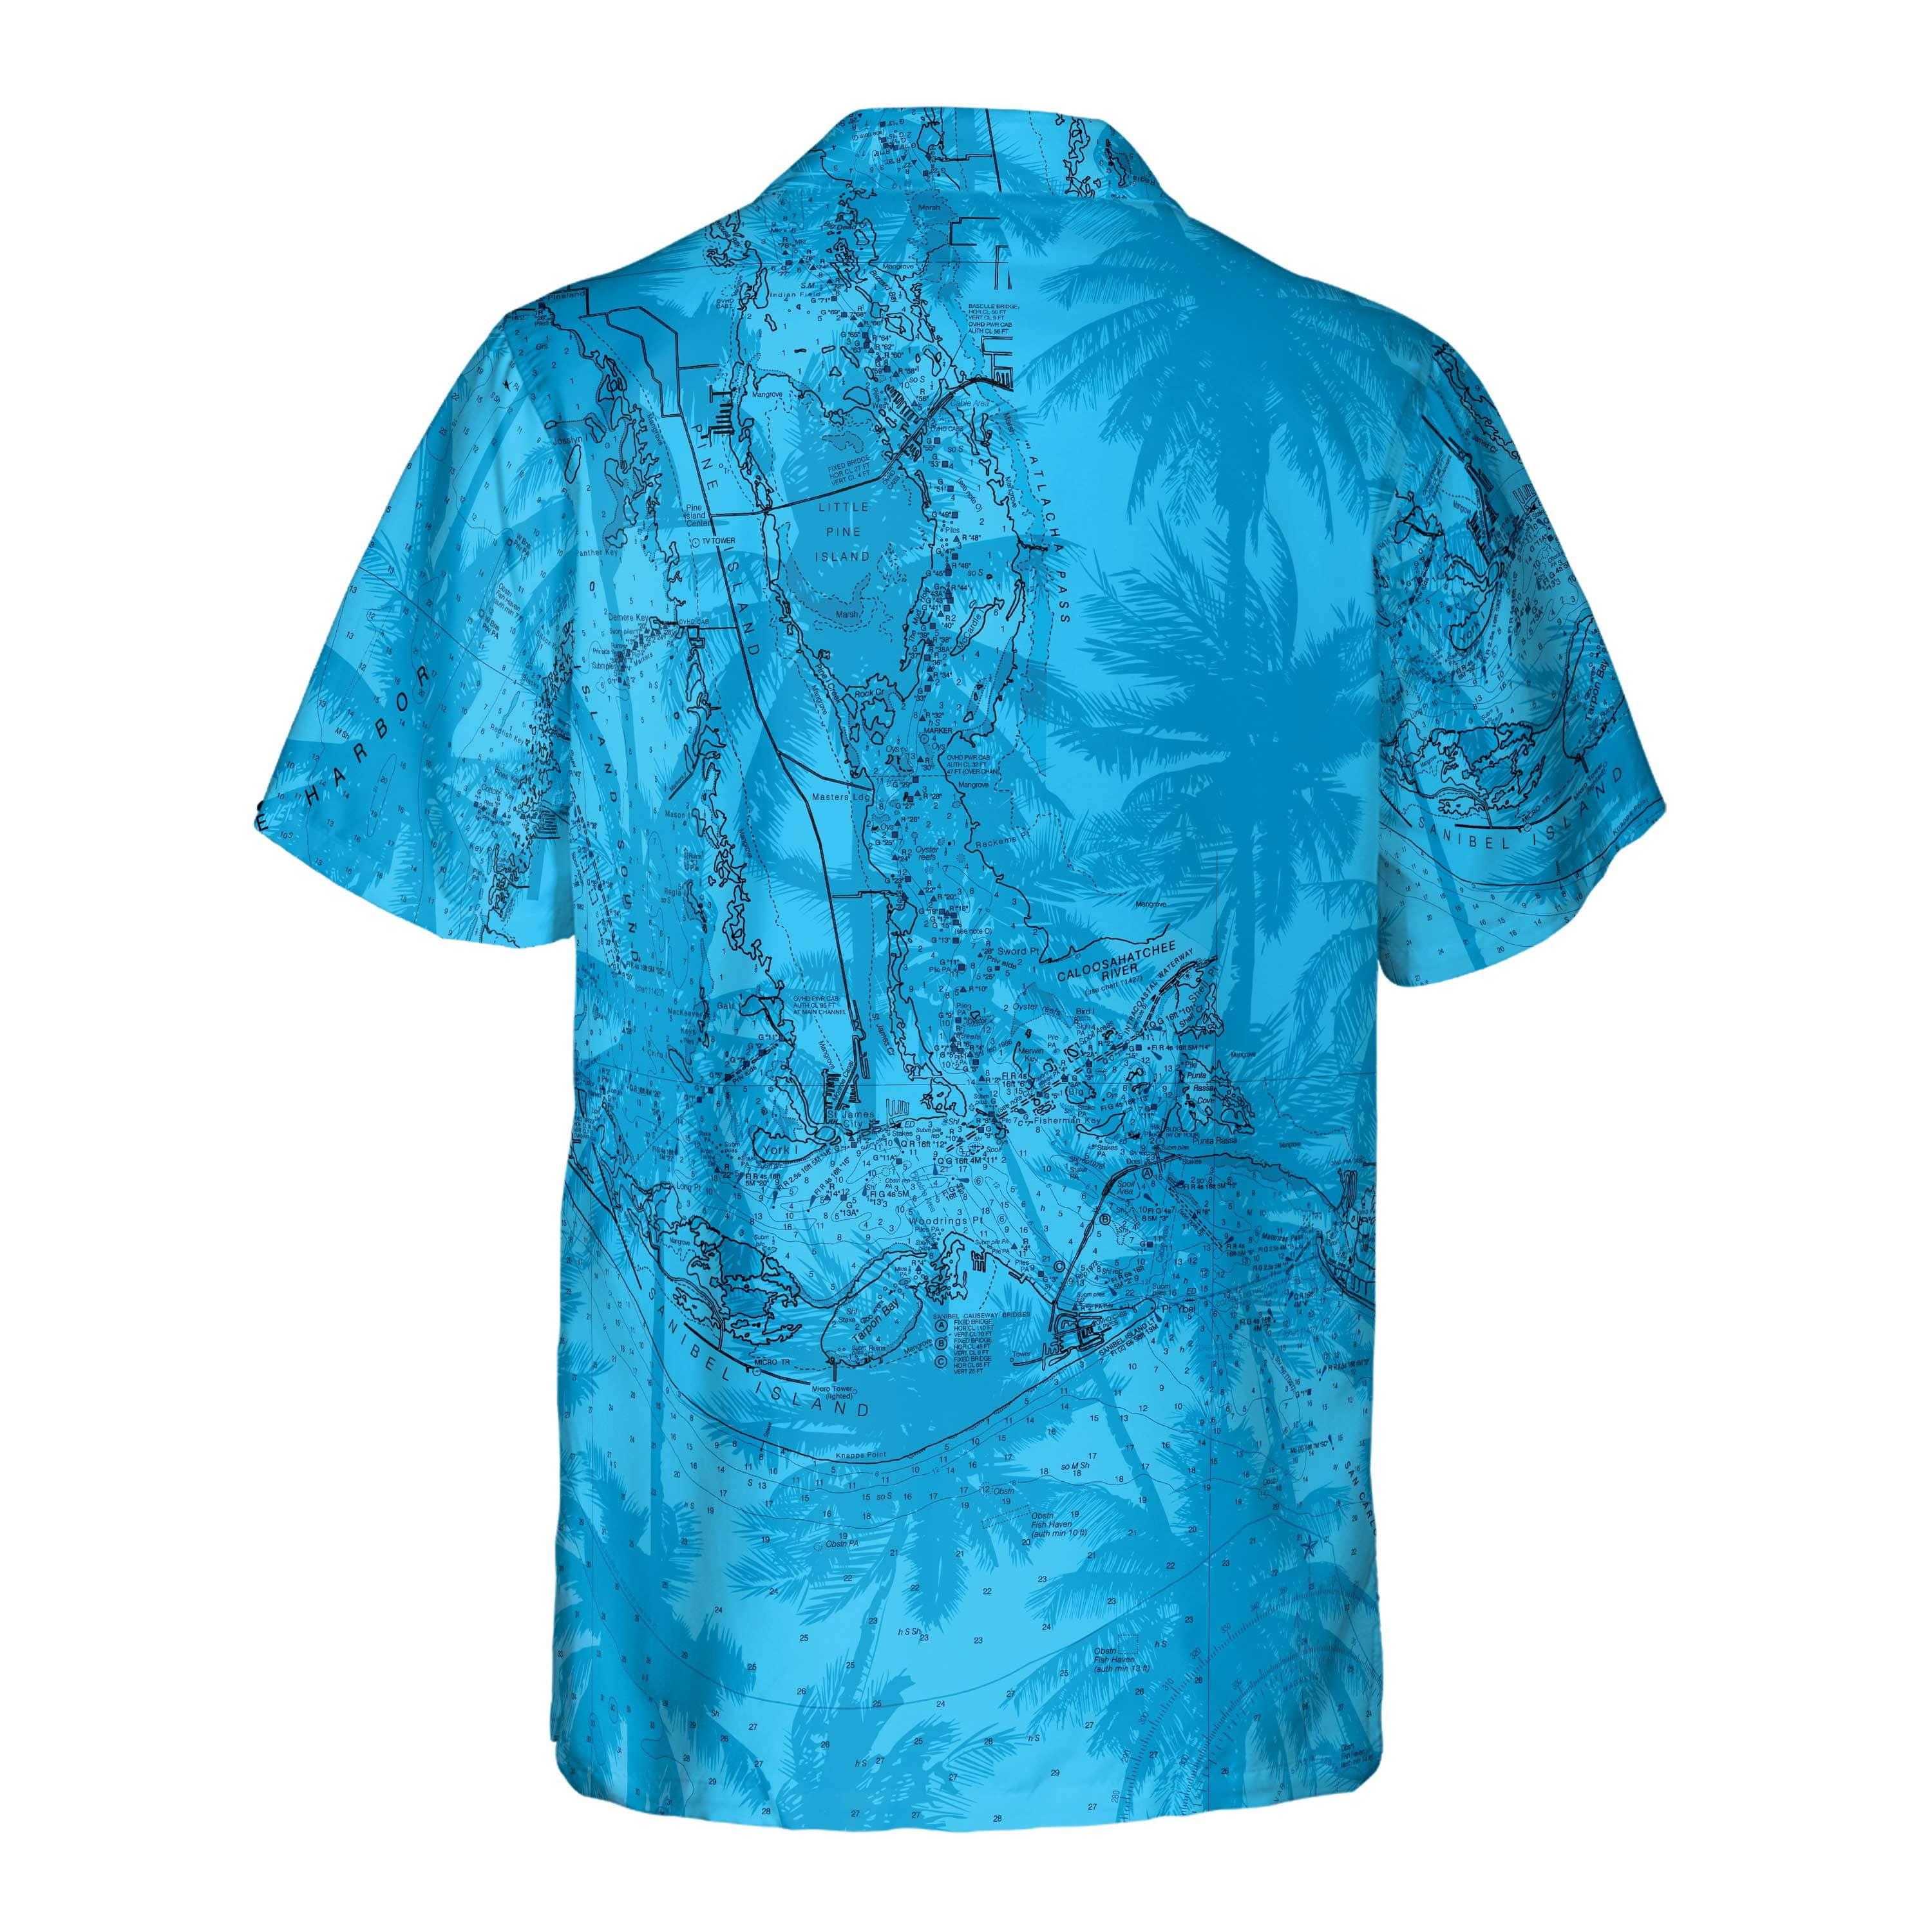 The Punta Gorda Blue Palms Pocket Shirt